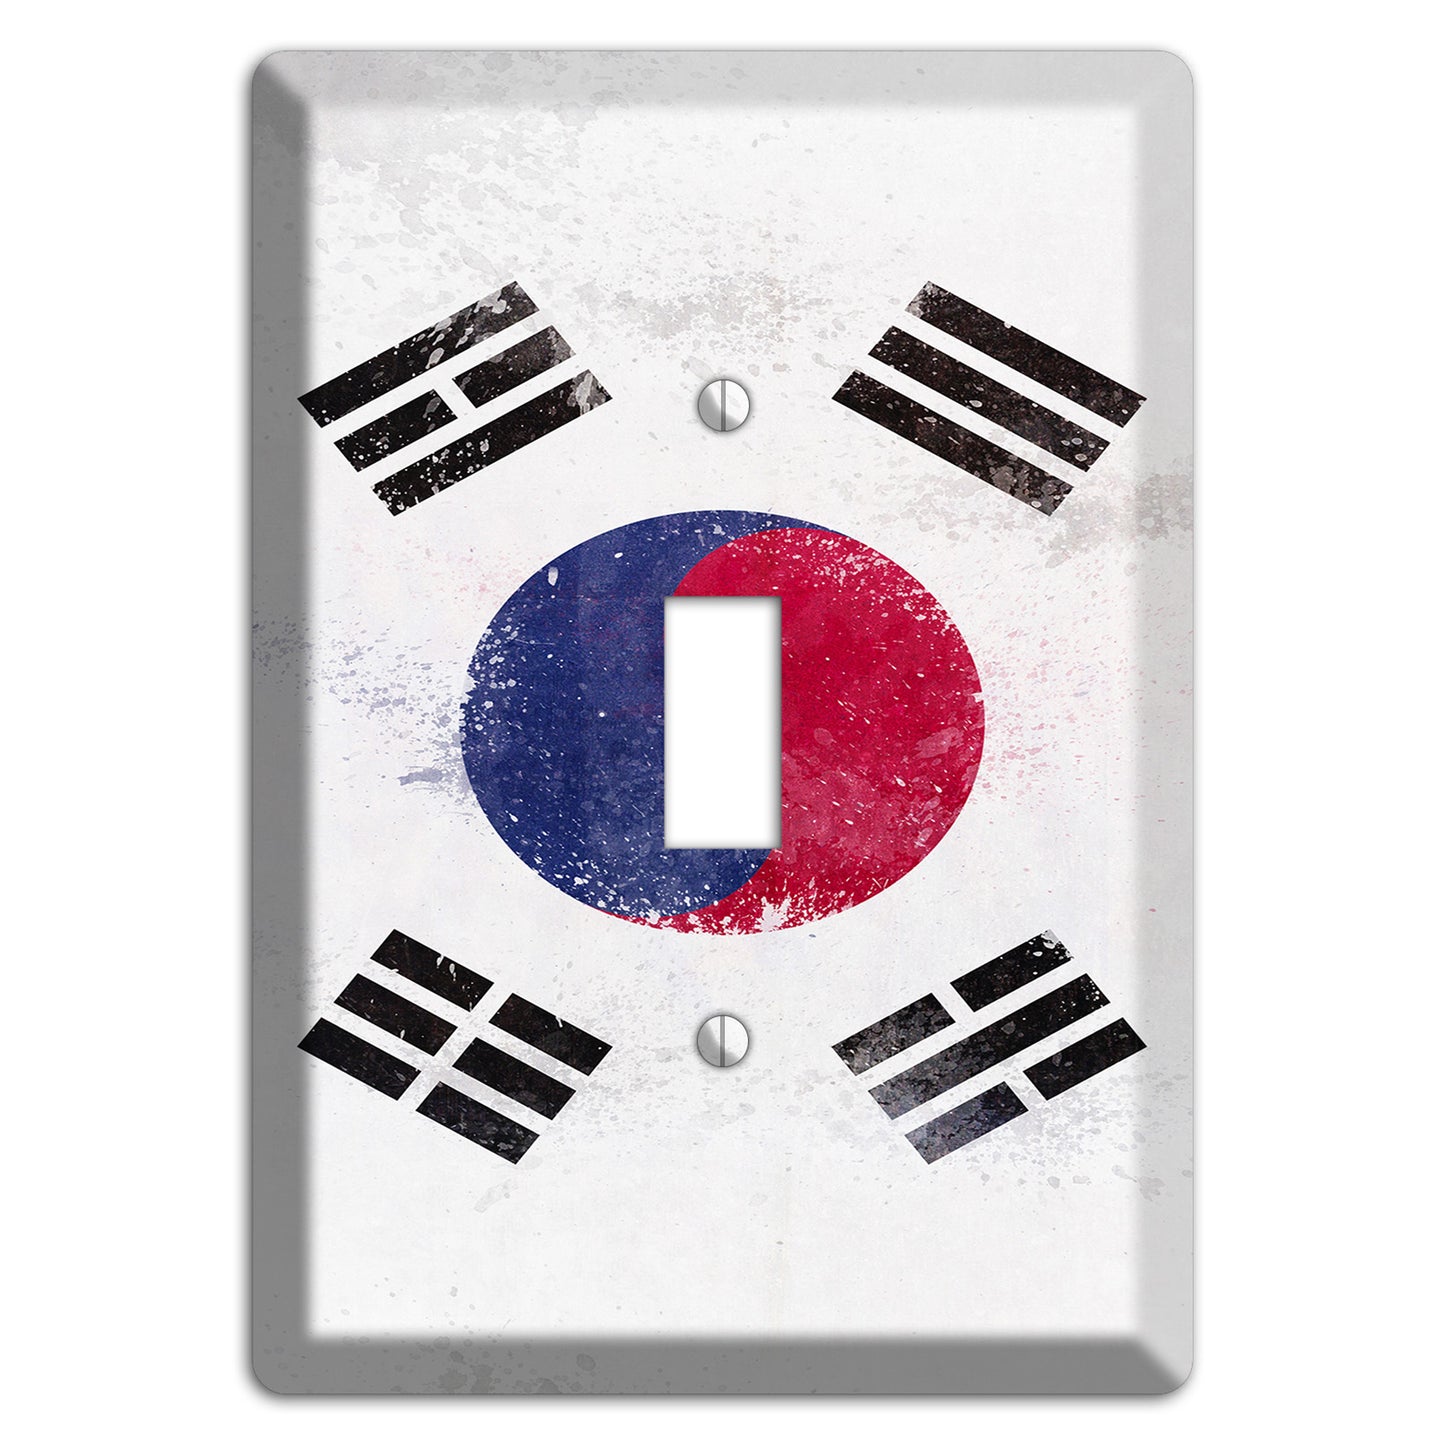 Korea South Cover Plates Cover Plates